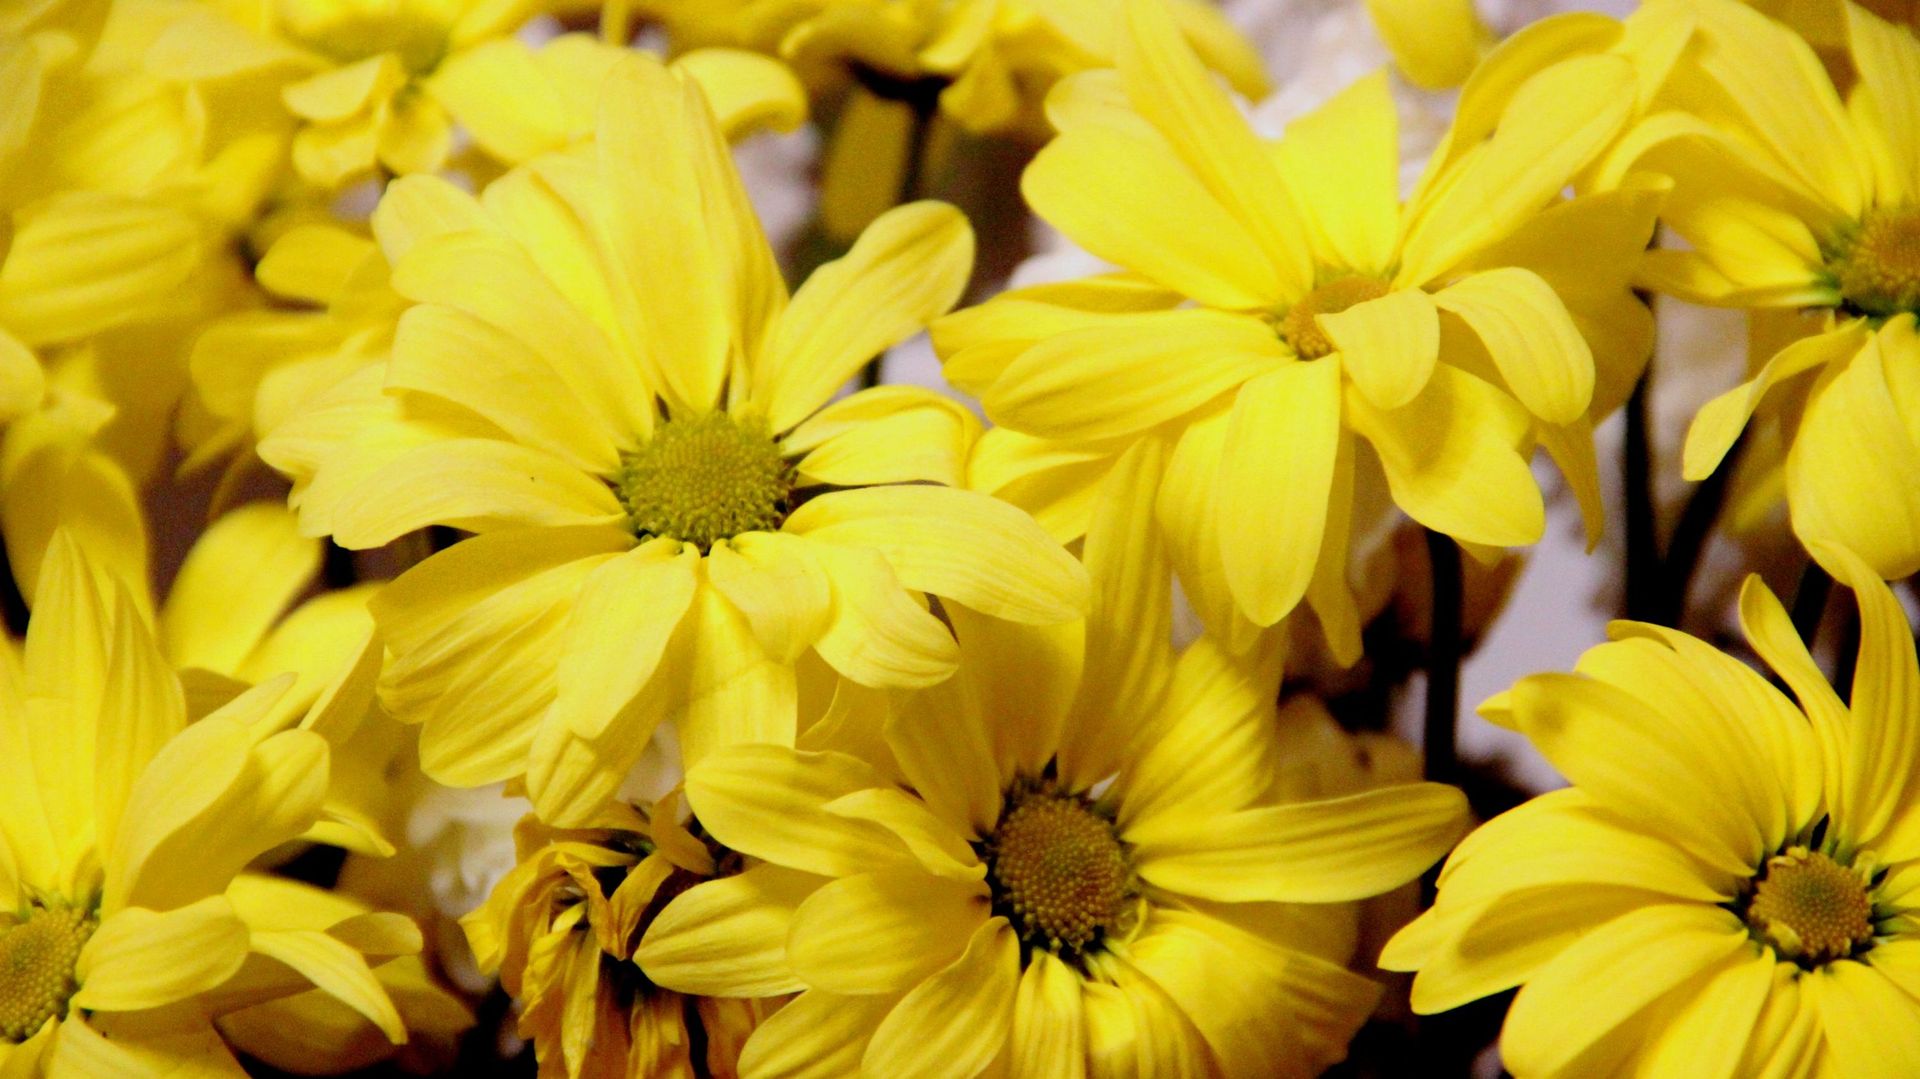 L’anthémis la plus commune est la tinctoria, aussi appelée anthémis des teinturiers. La plante servait autrefois à la confection de la teinture jaune.